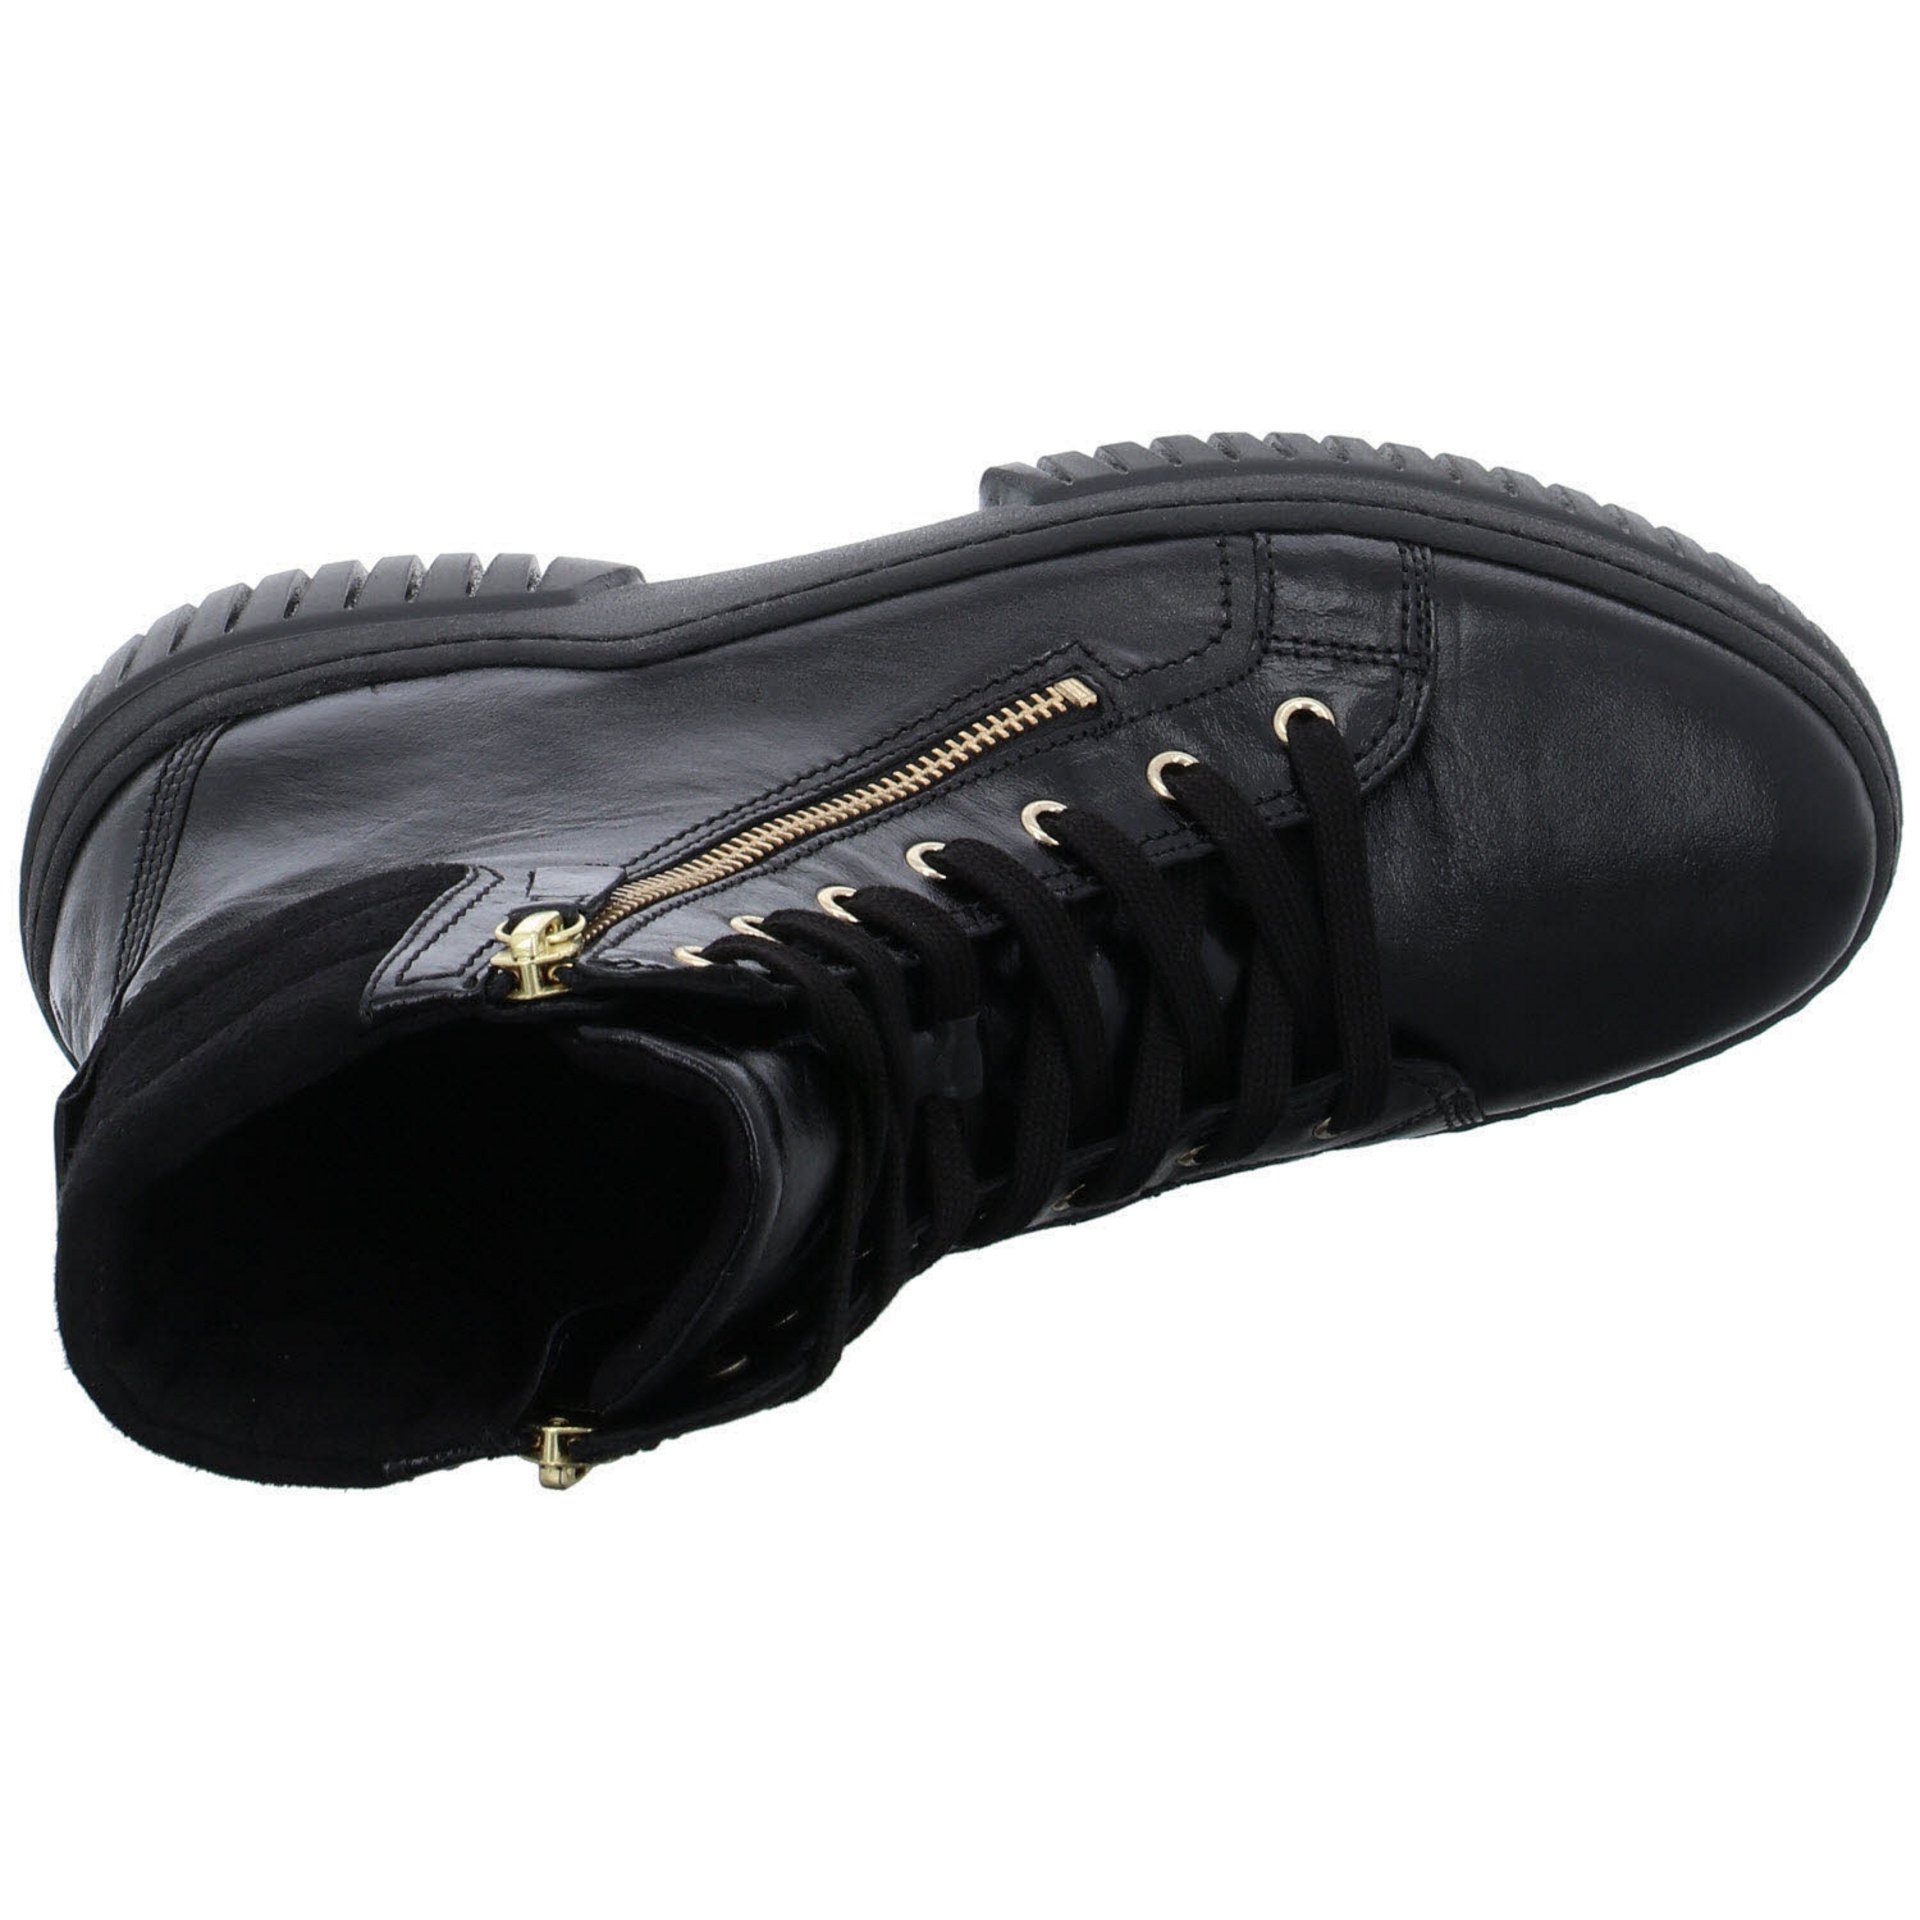 Gabor Damen Elegant schwarz Schnürstiefel Schuhe Stiefeletten Boots Glattleder (gold) Freizeit